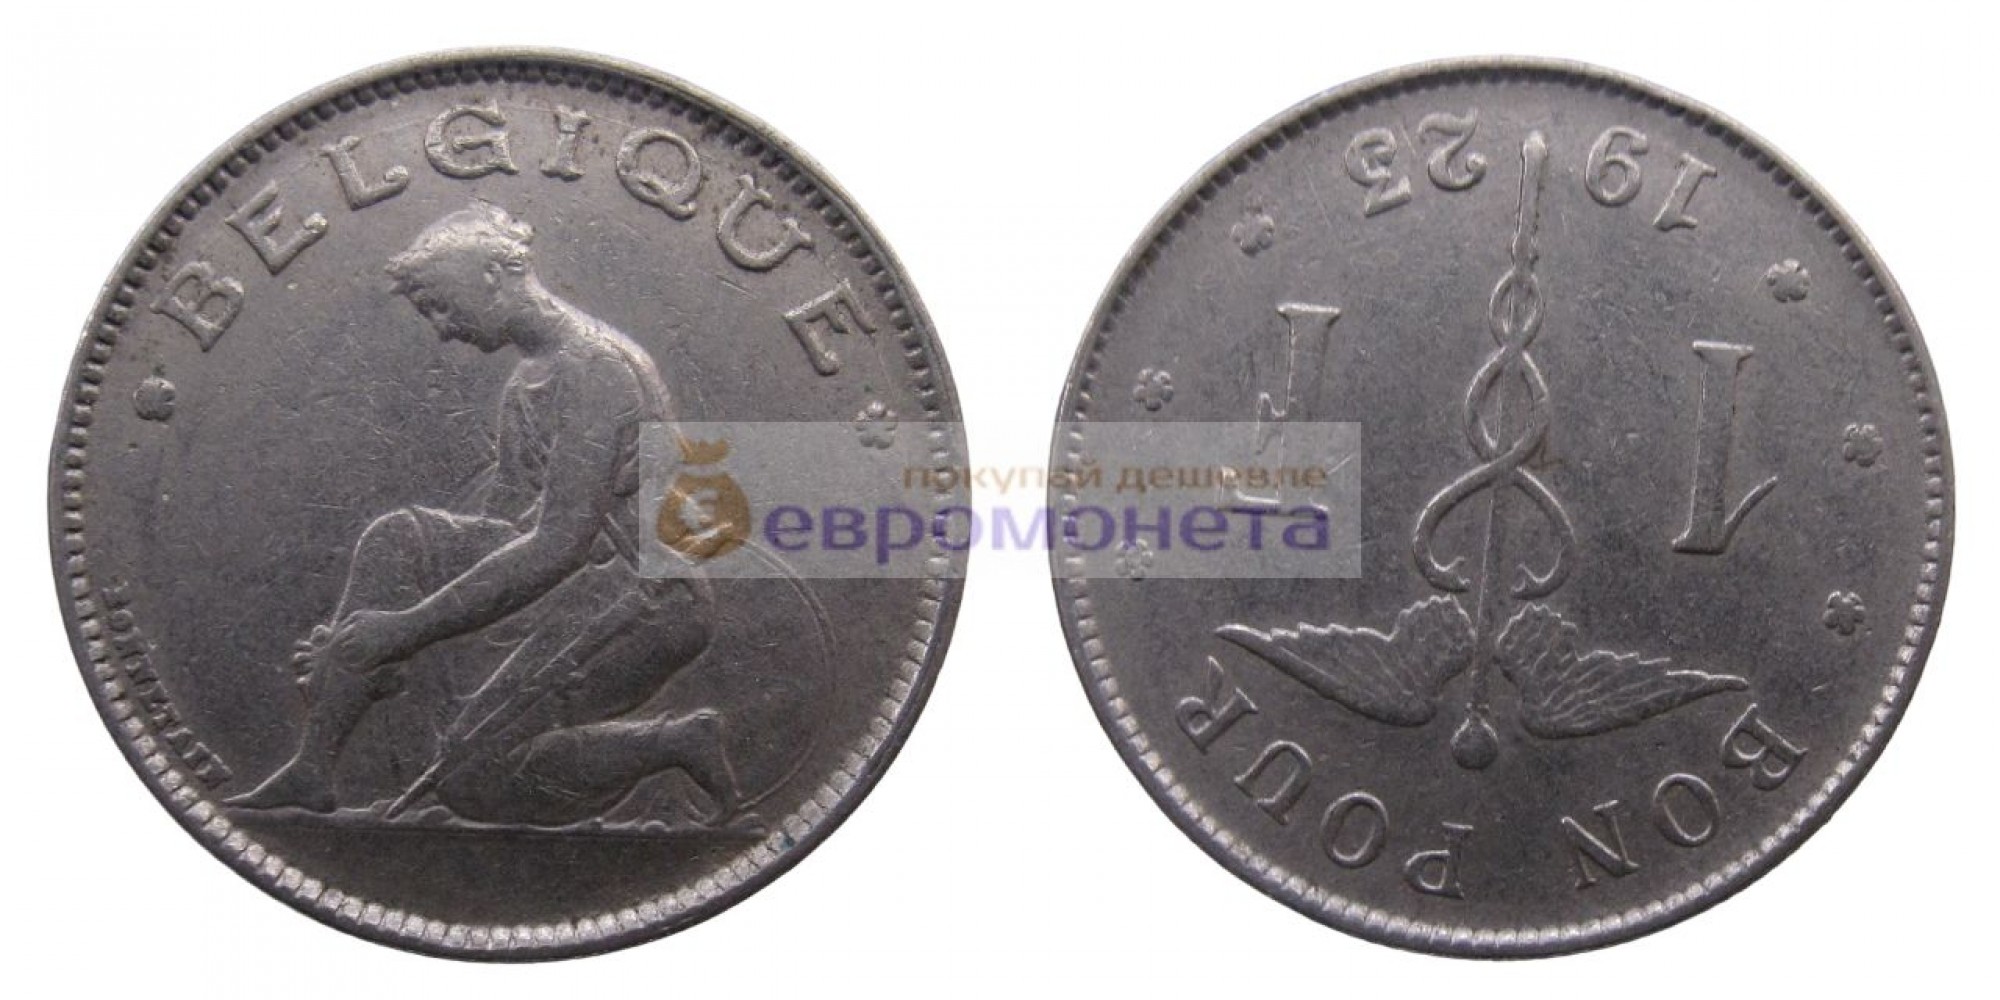 Бельгия 1 франк 1923 год. Король Альберт I. Надпись на французском - 'BELGIQUE'